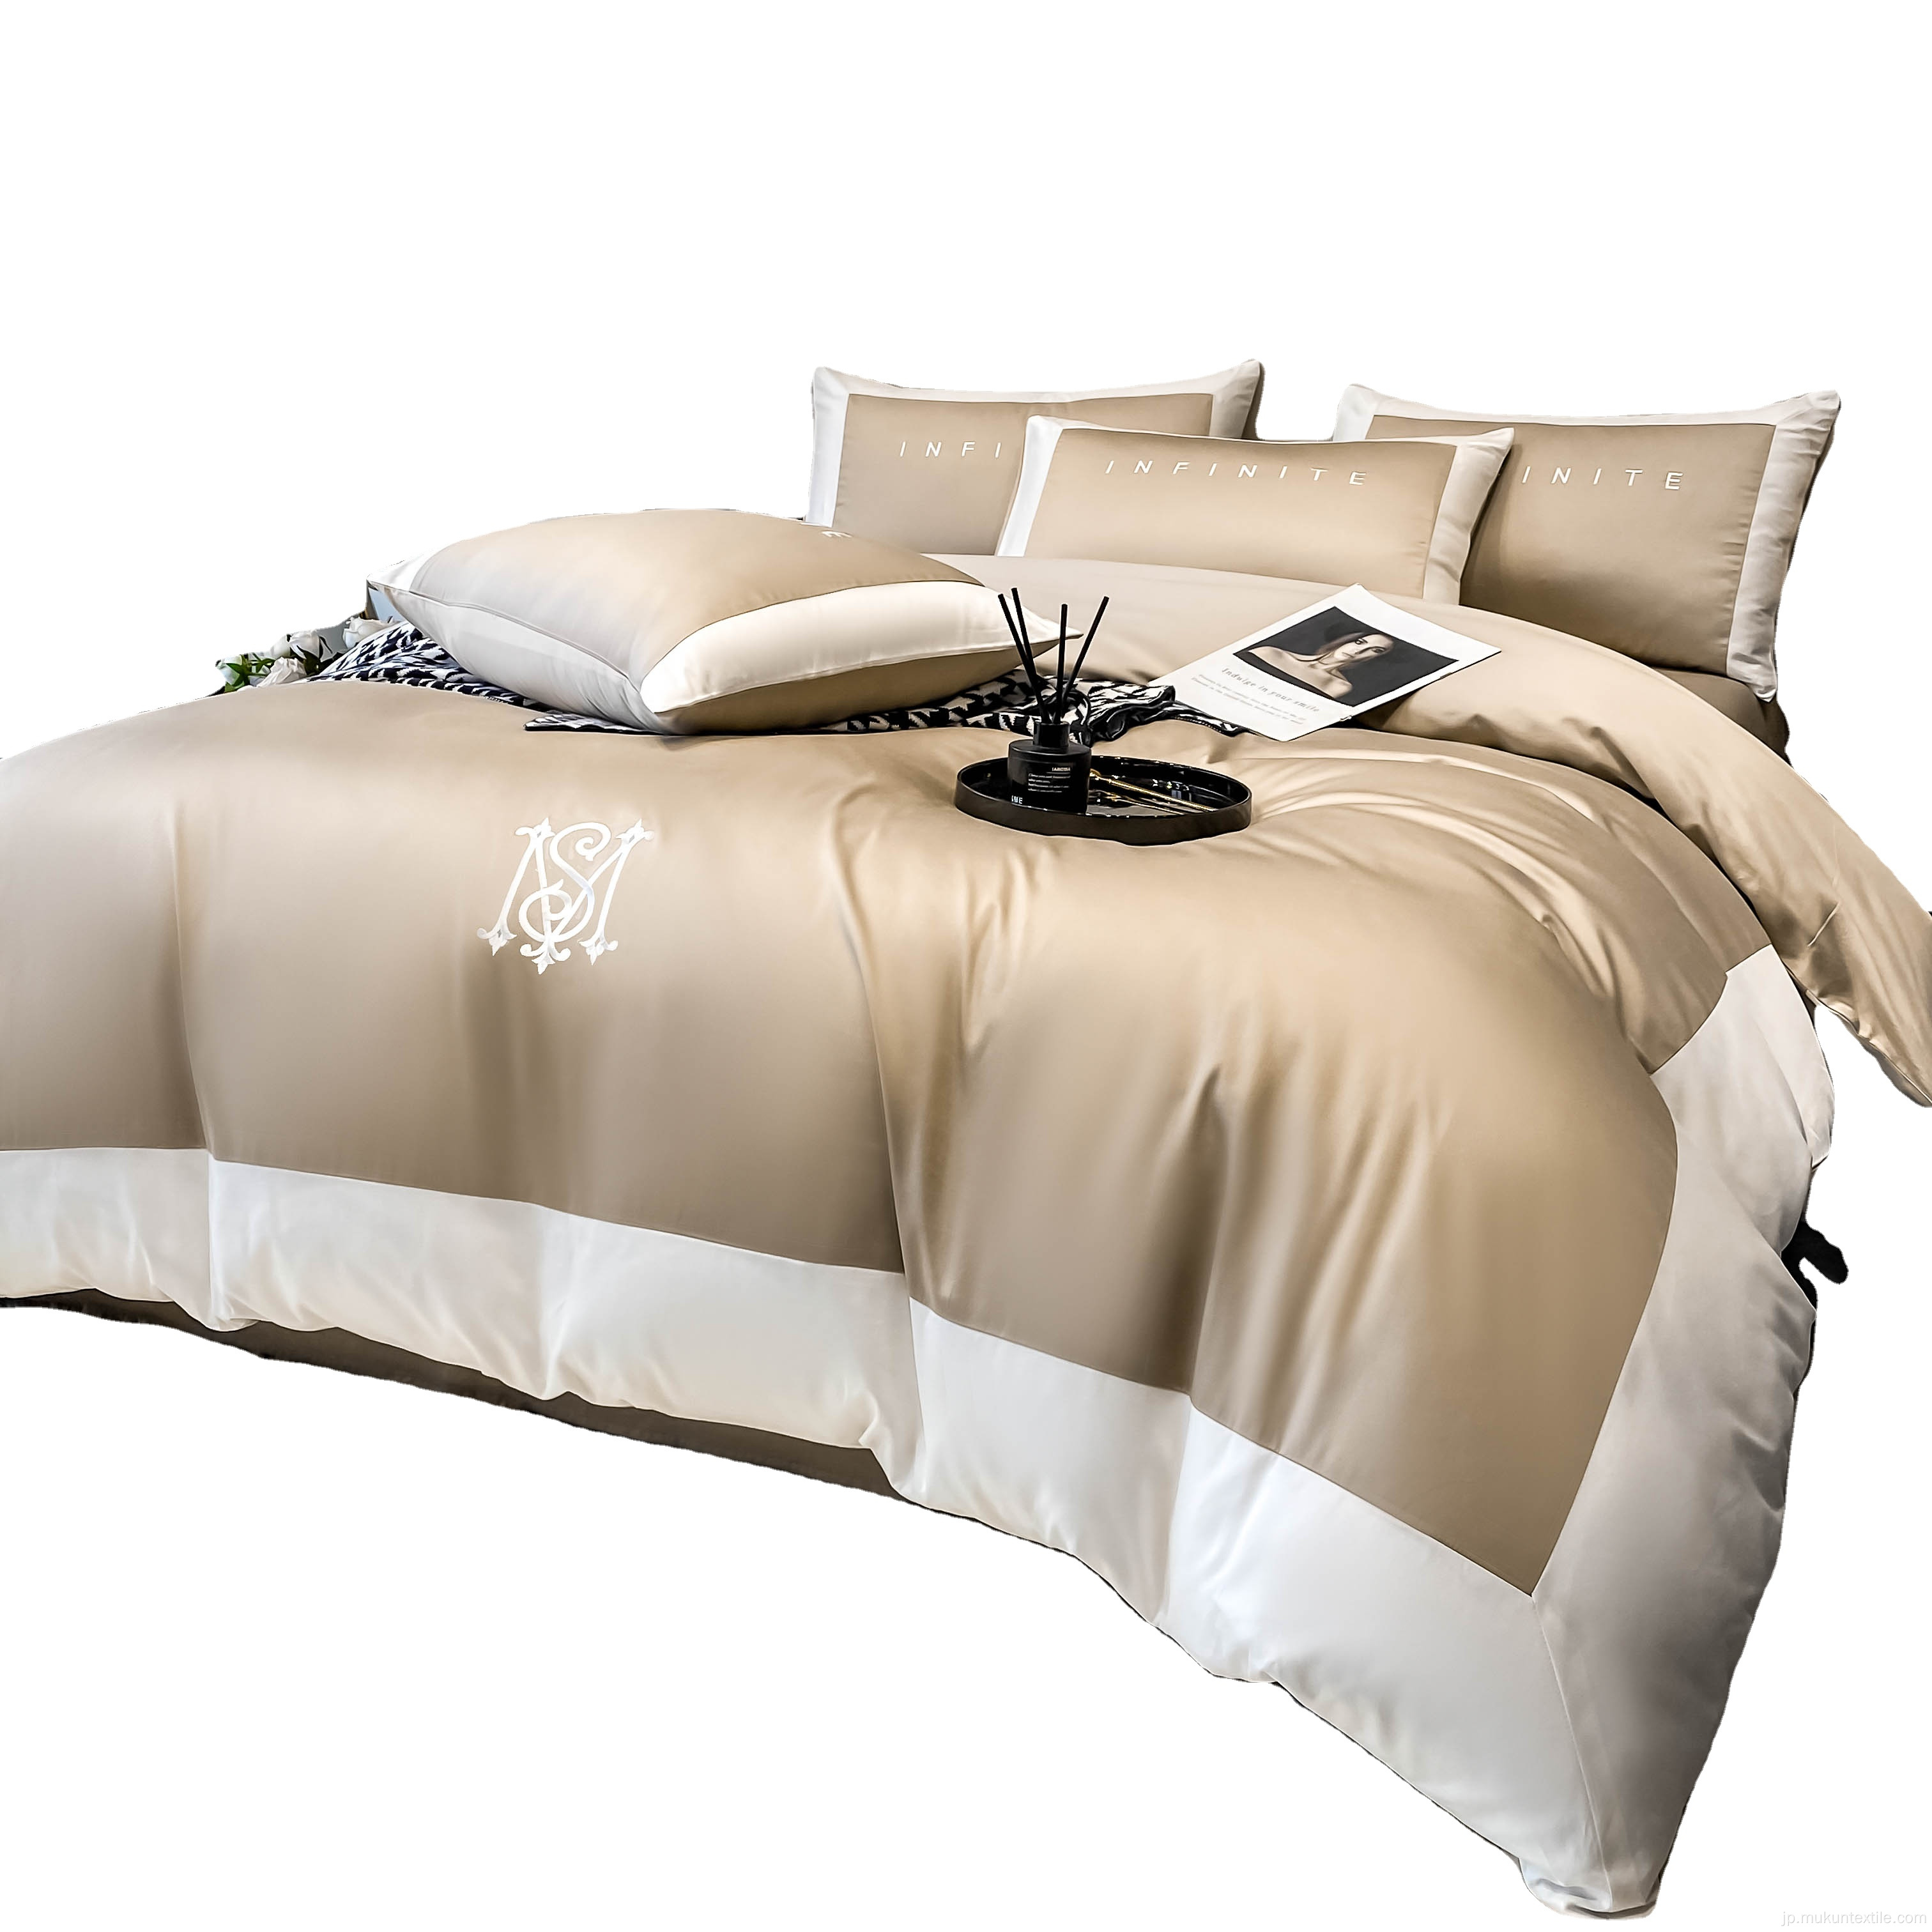 刺繍品質の掛け布団キングサイズの綿の寝具セット